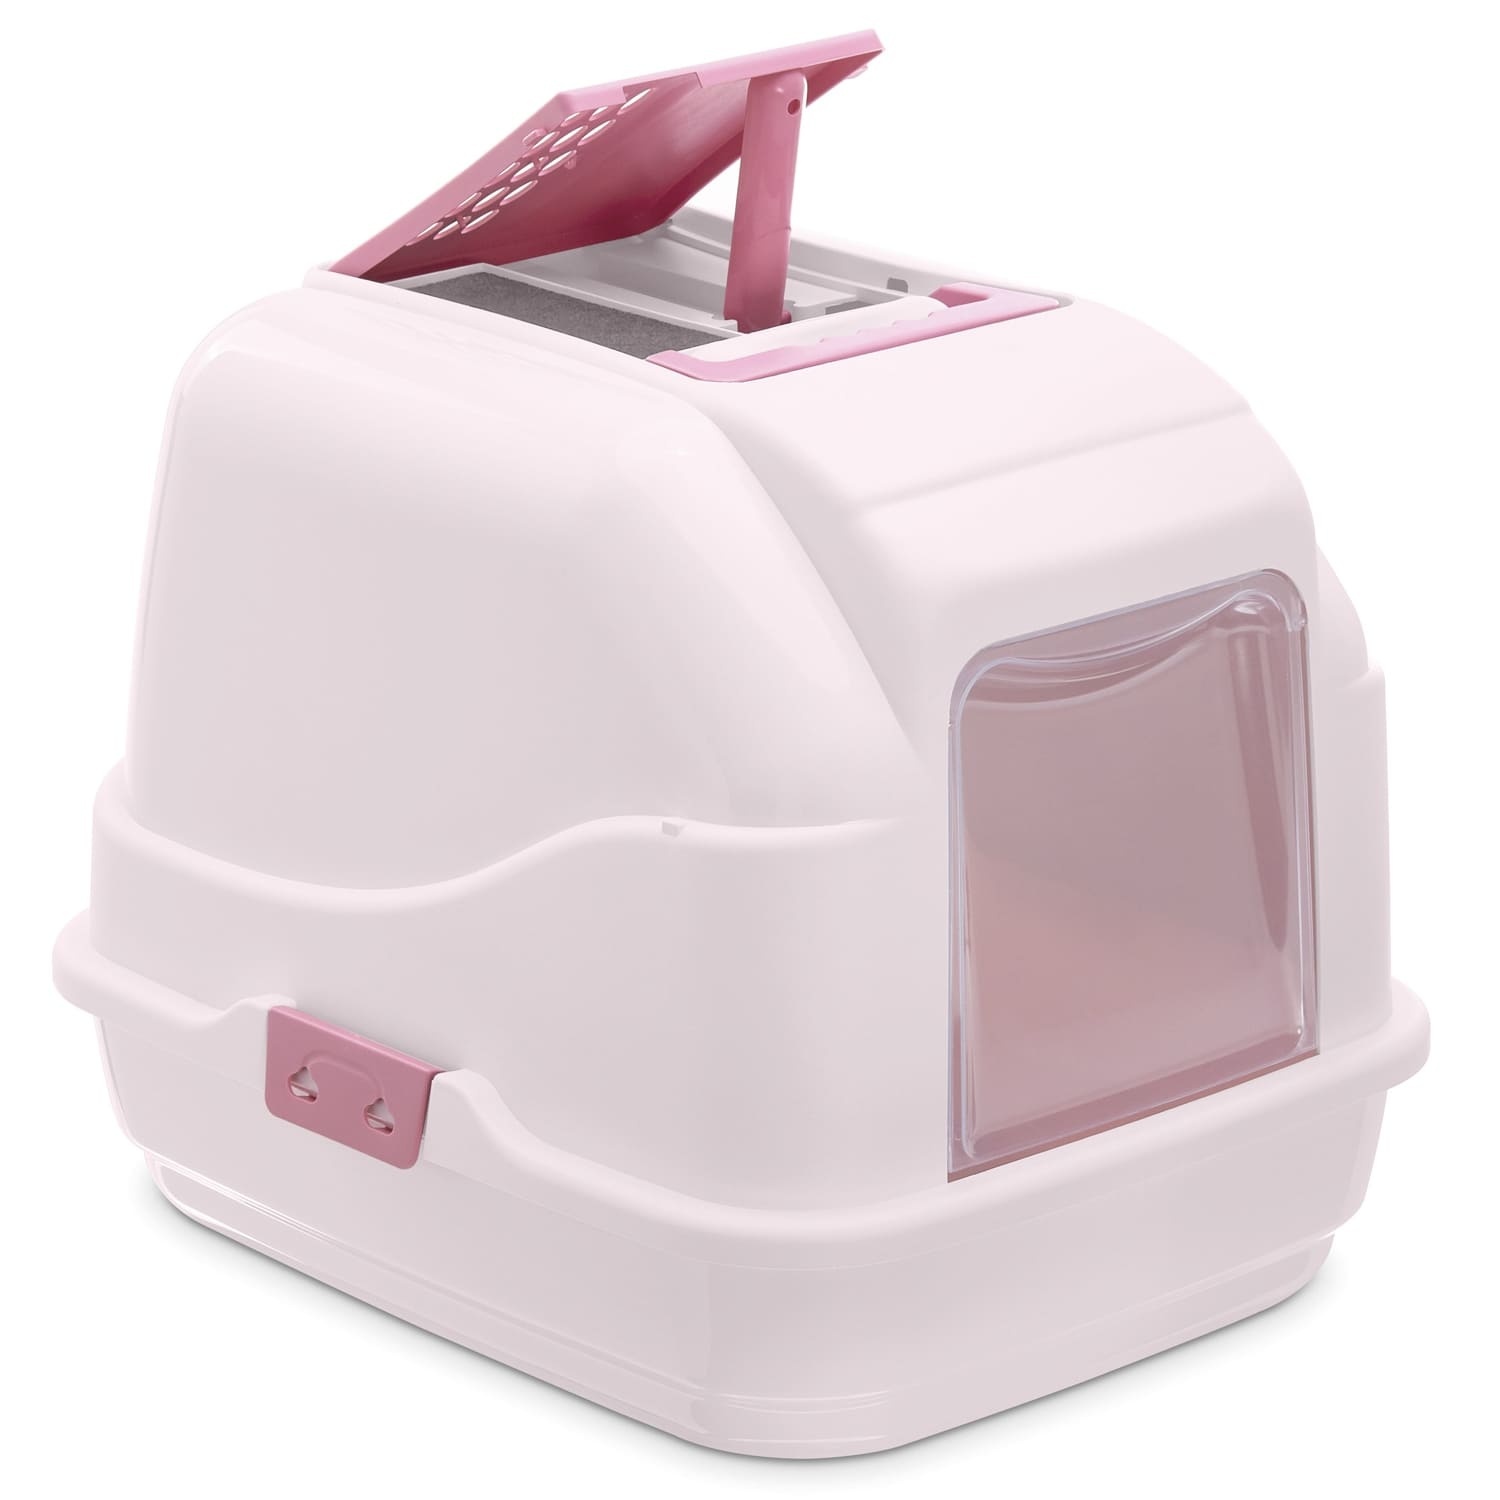 IMAC IMAC био-туалет для кошек, нежно-розовый (1,7 кг) imac imac совочек для туалета 23 см нежно розовый неж гол